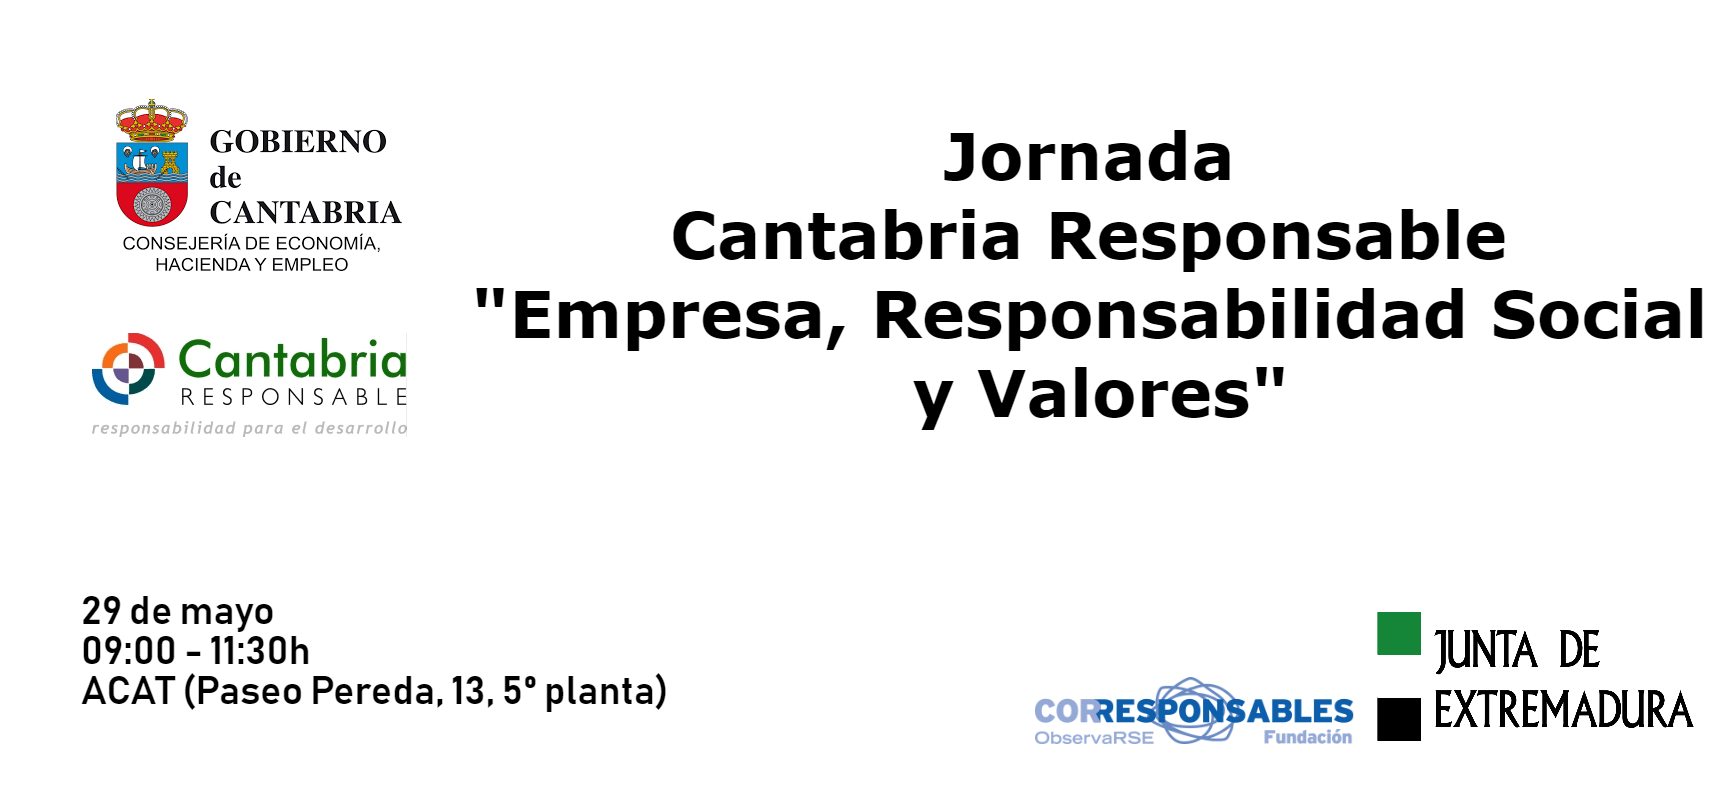 Jornada Cantabria Responsable